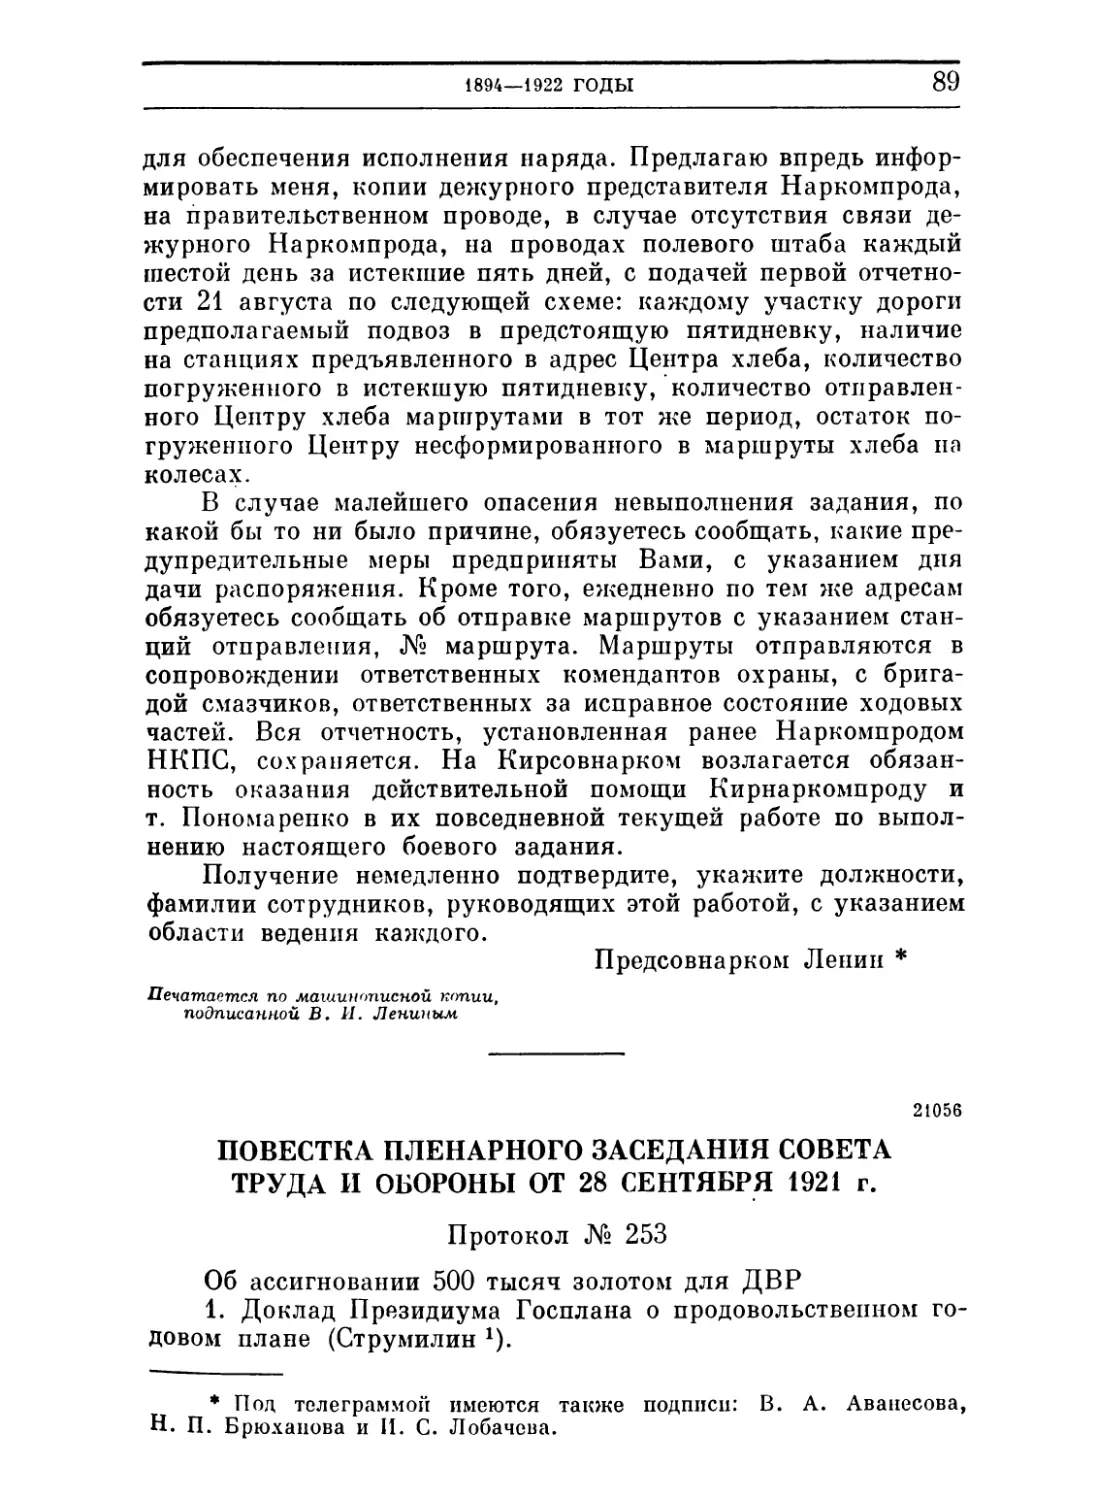 Повестка пленарного заседания Совета Труда и Обороны. 28 сентября 1921